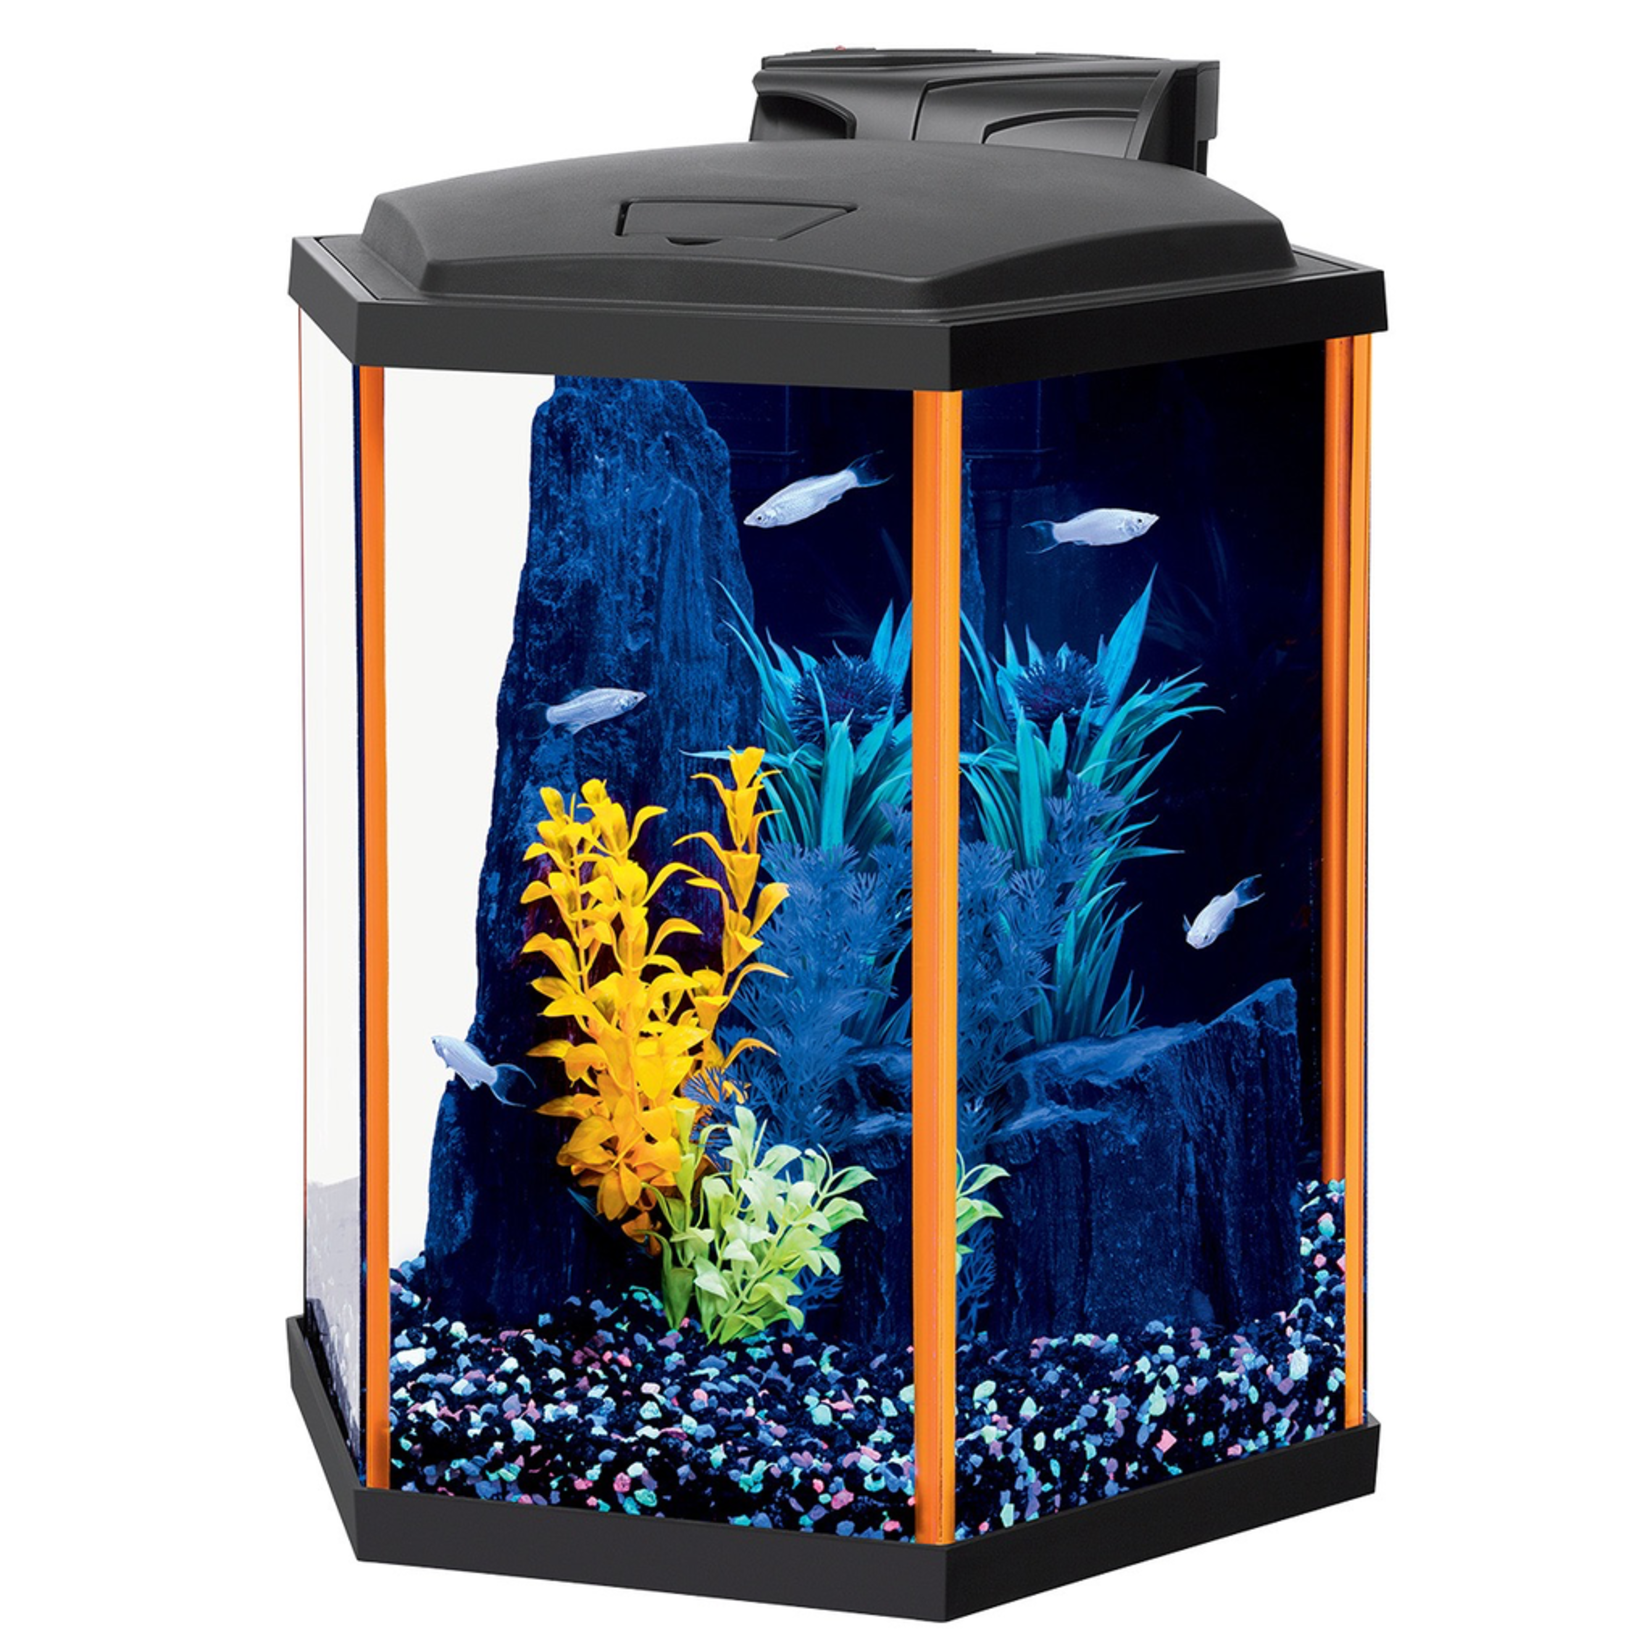 NEOGLOW NeoGlow Hexagon Aquarium Kit - Orange - 8 gal